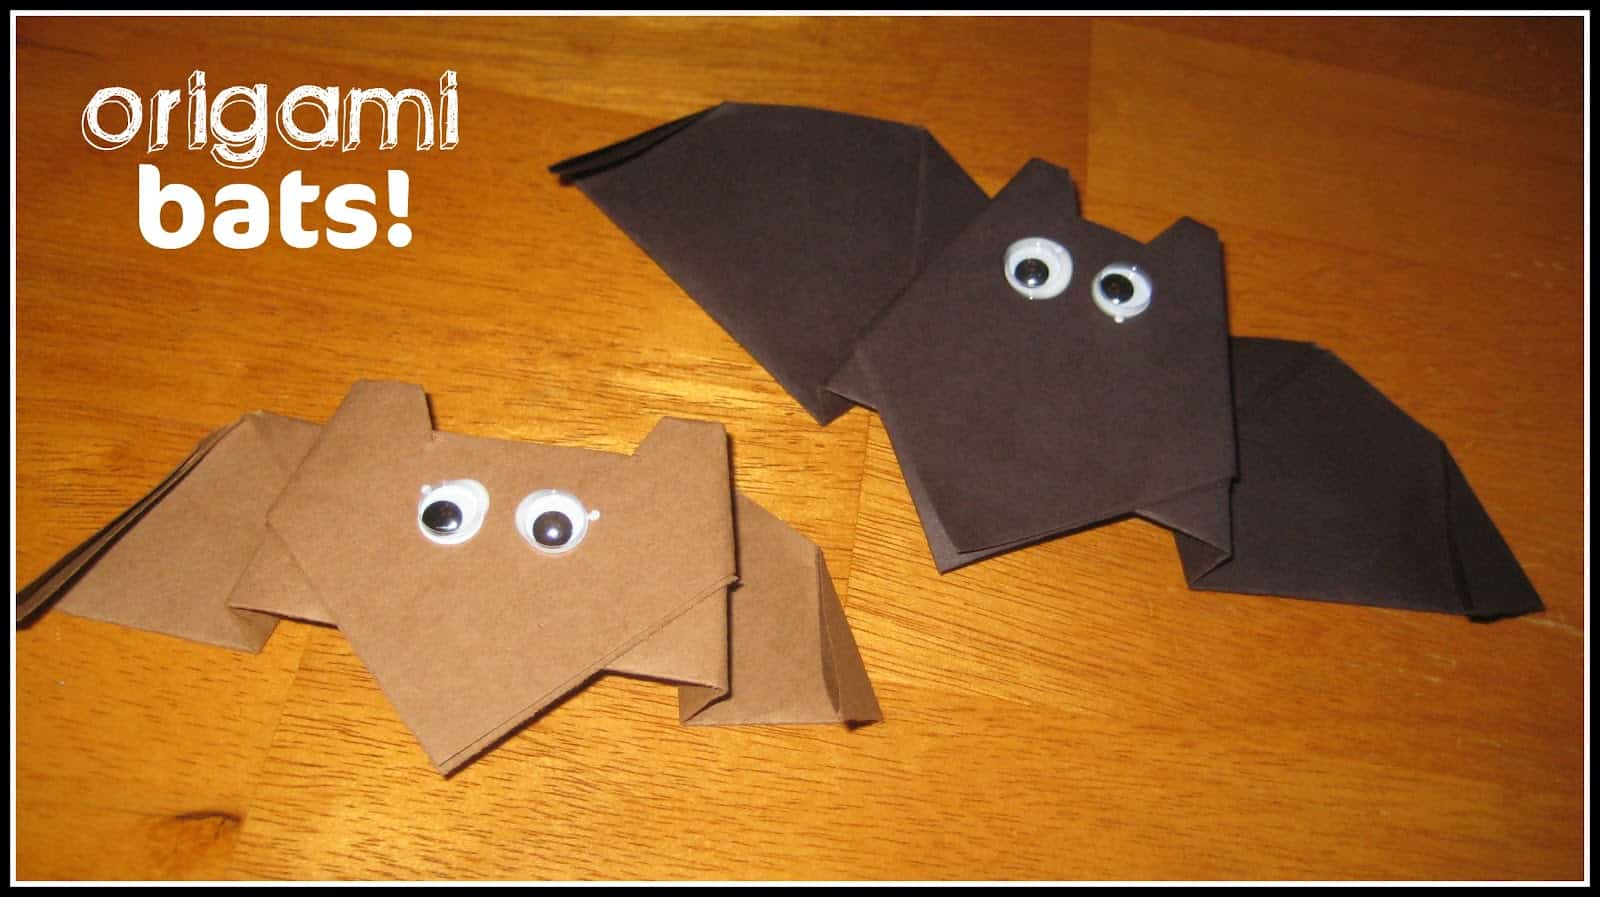 Origami bats